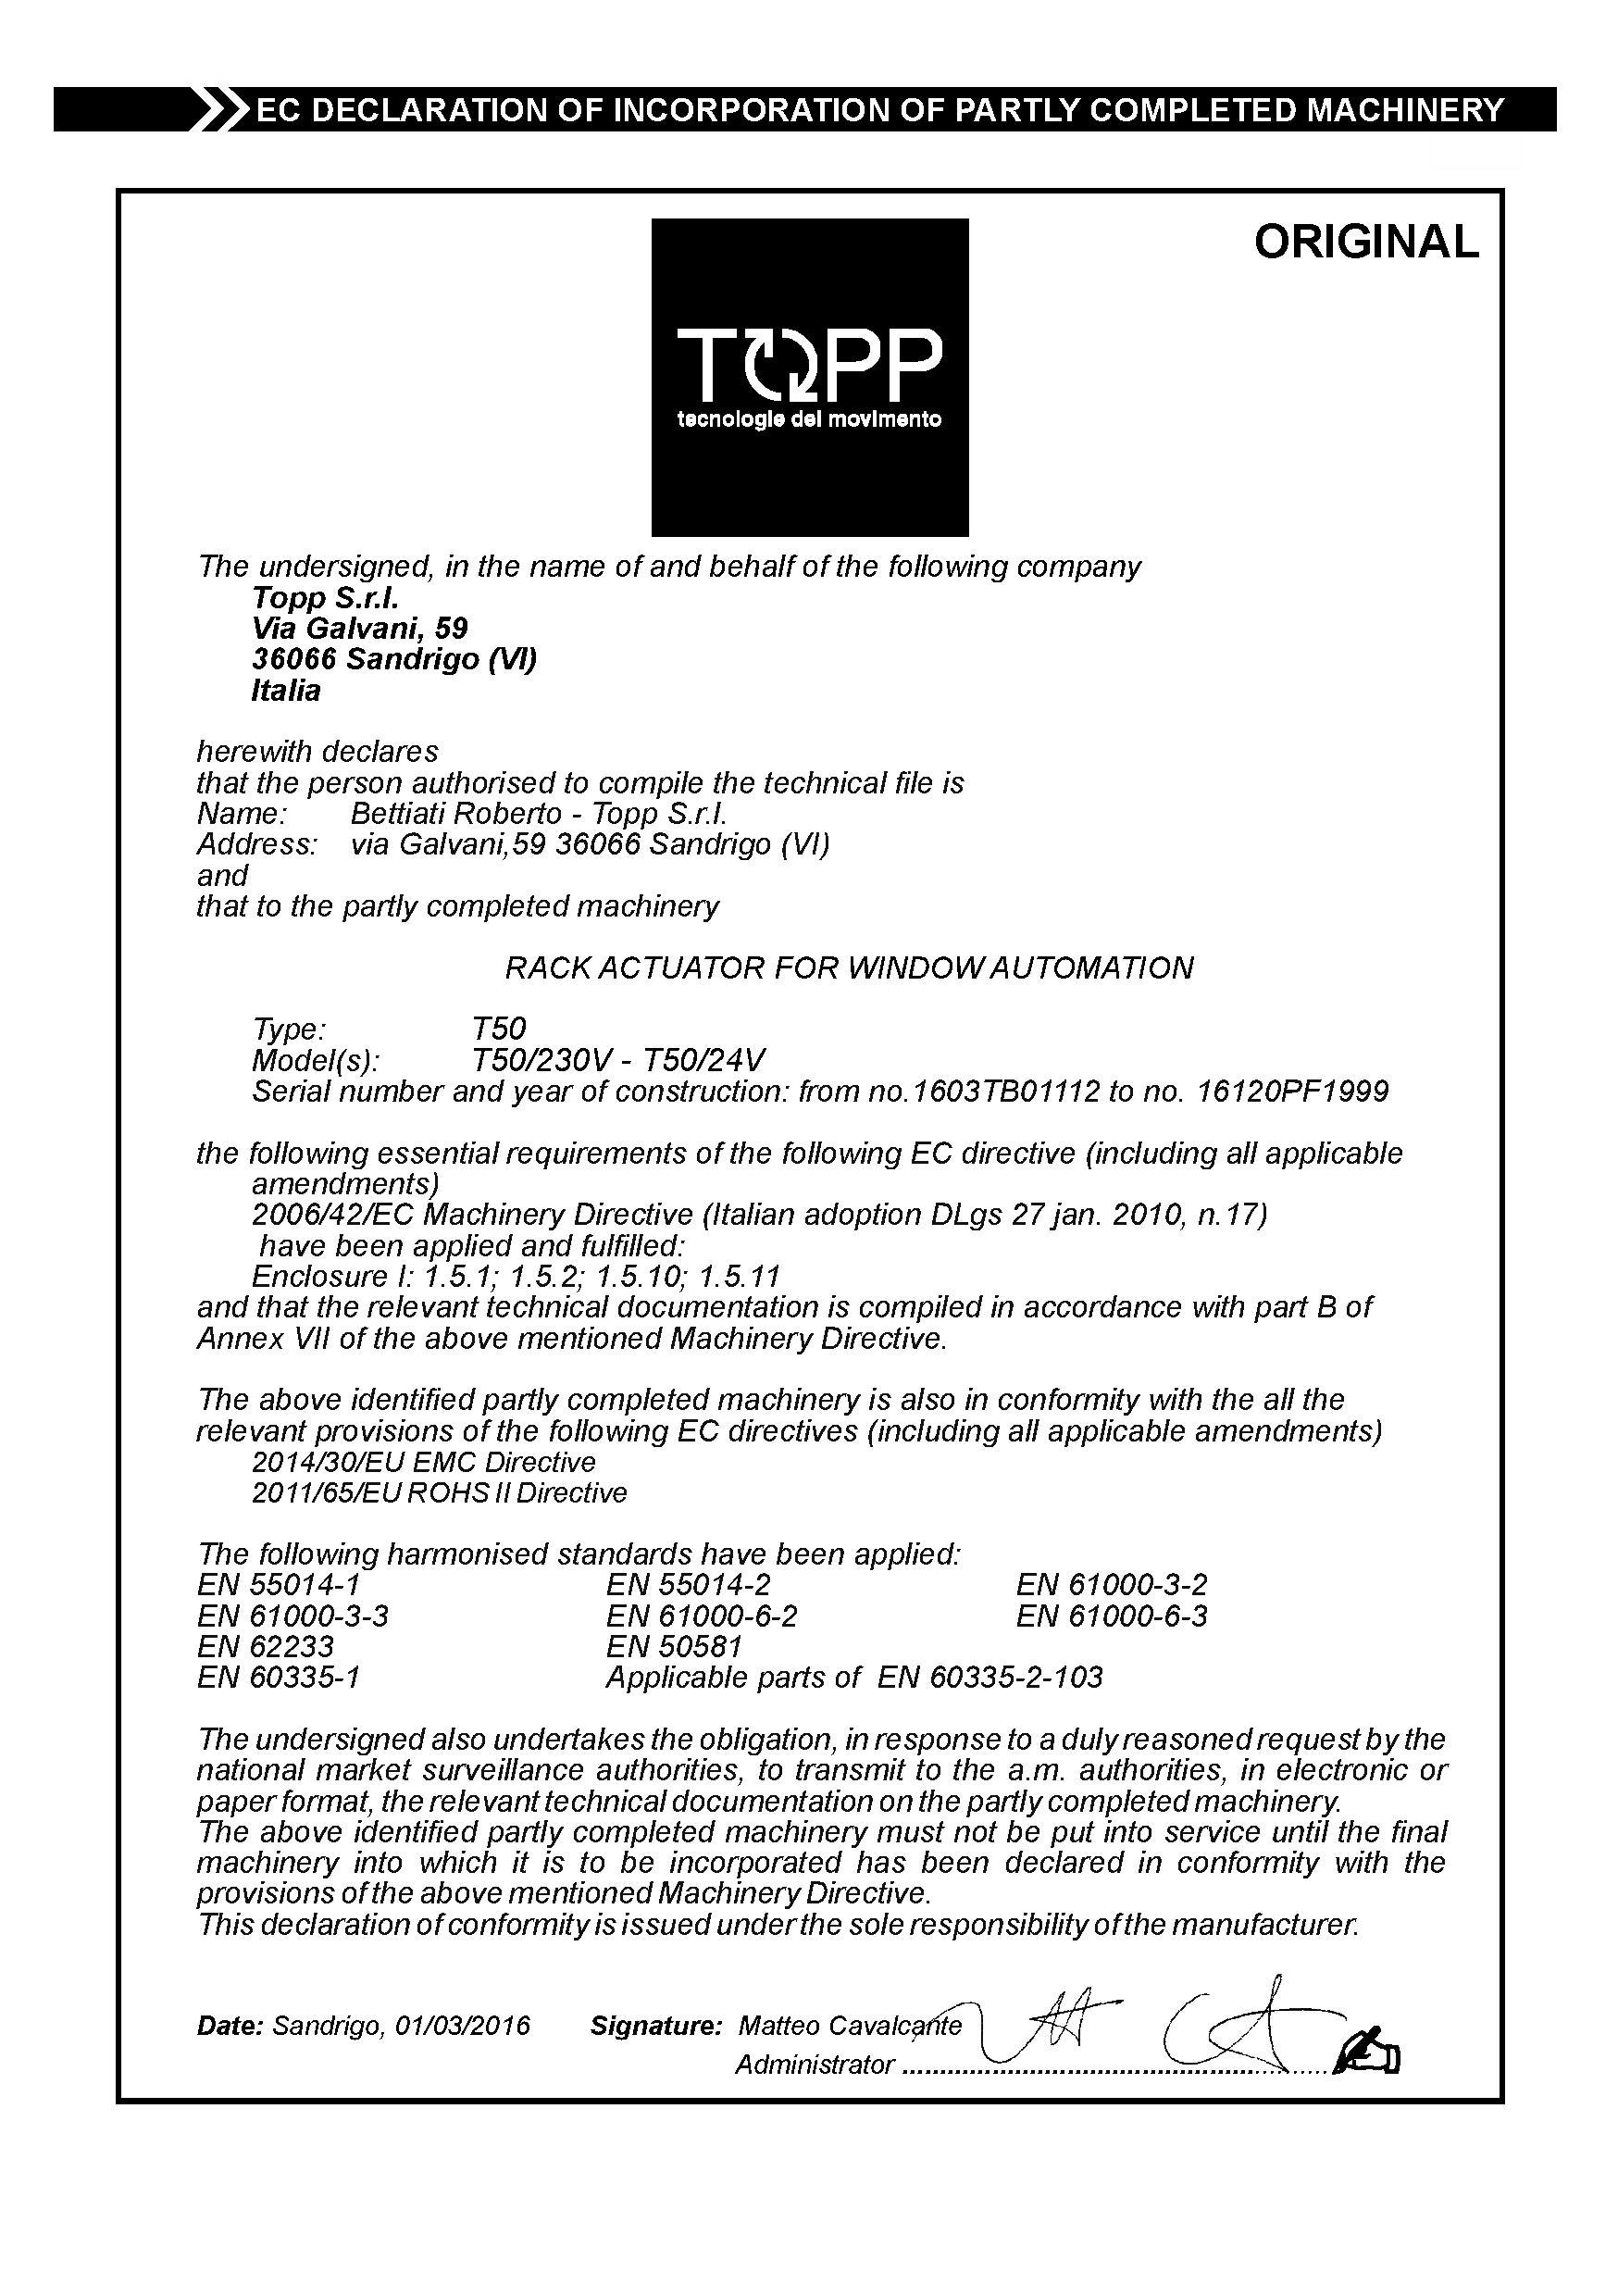 TOPP rack actuator T50 certifications